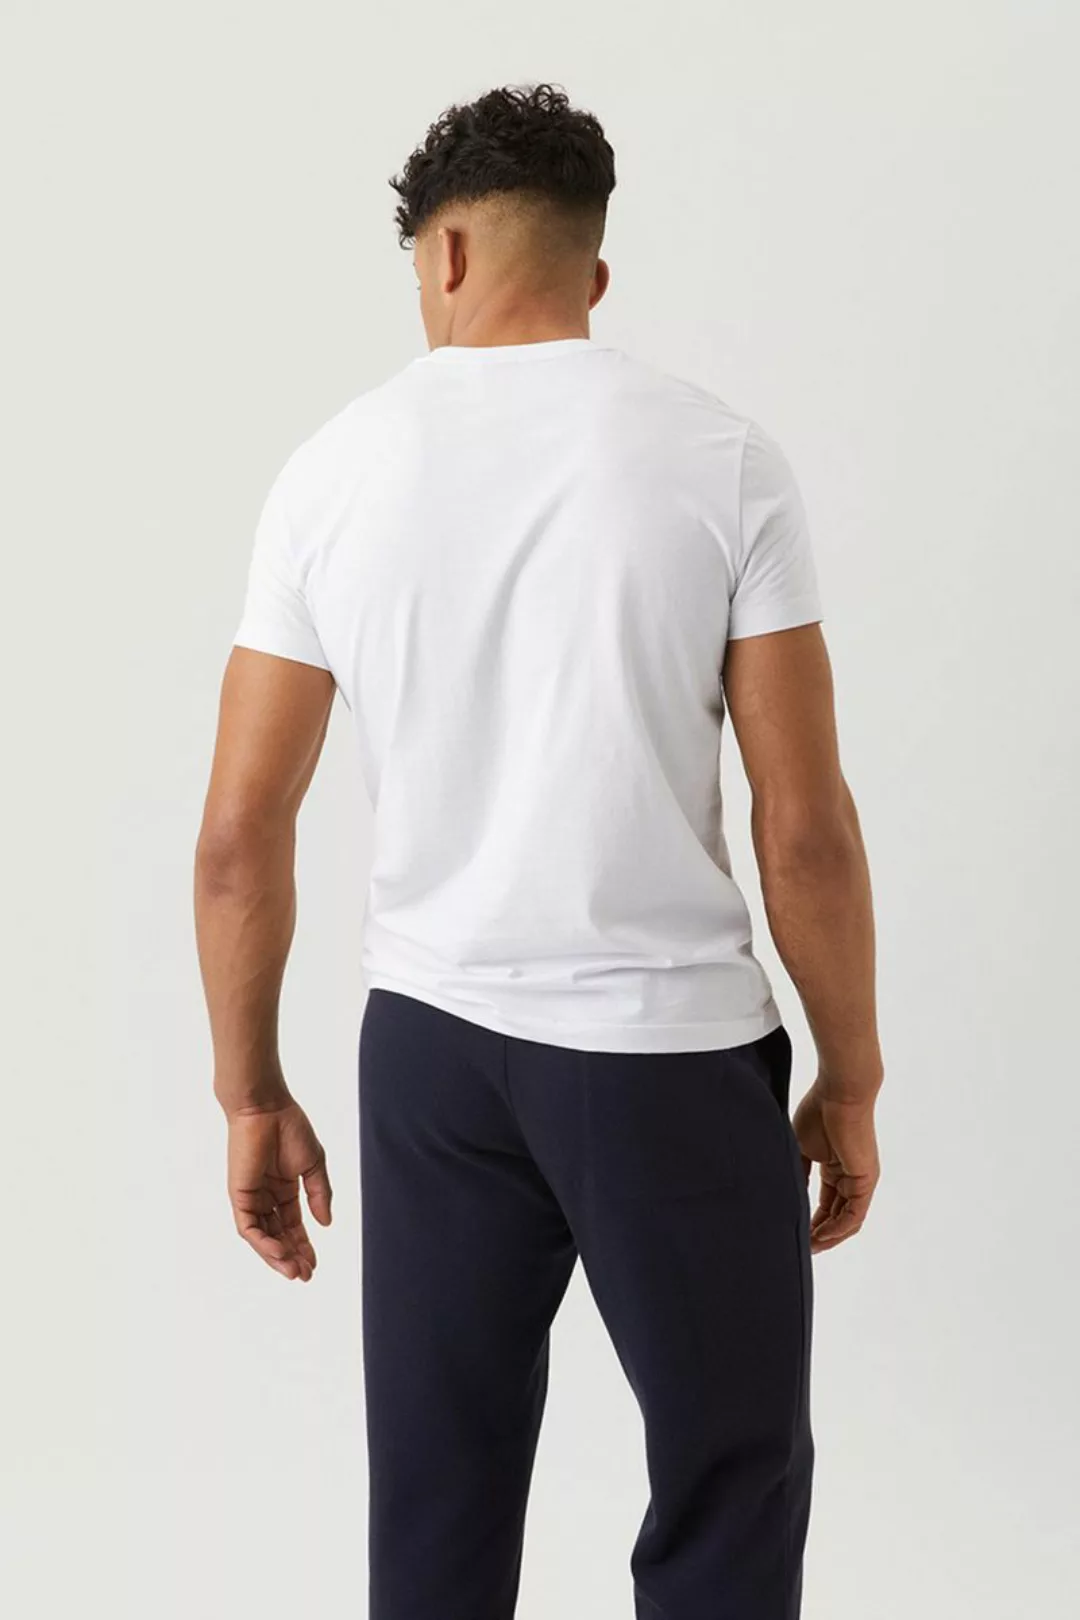 Bjorn Borg Basic T-Shirt Weiß - Größe S günstig online kaufen